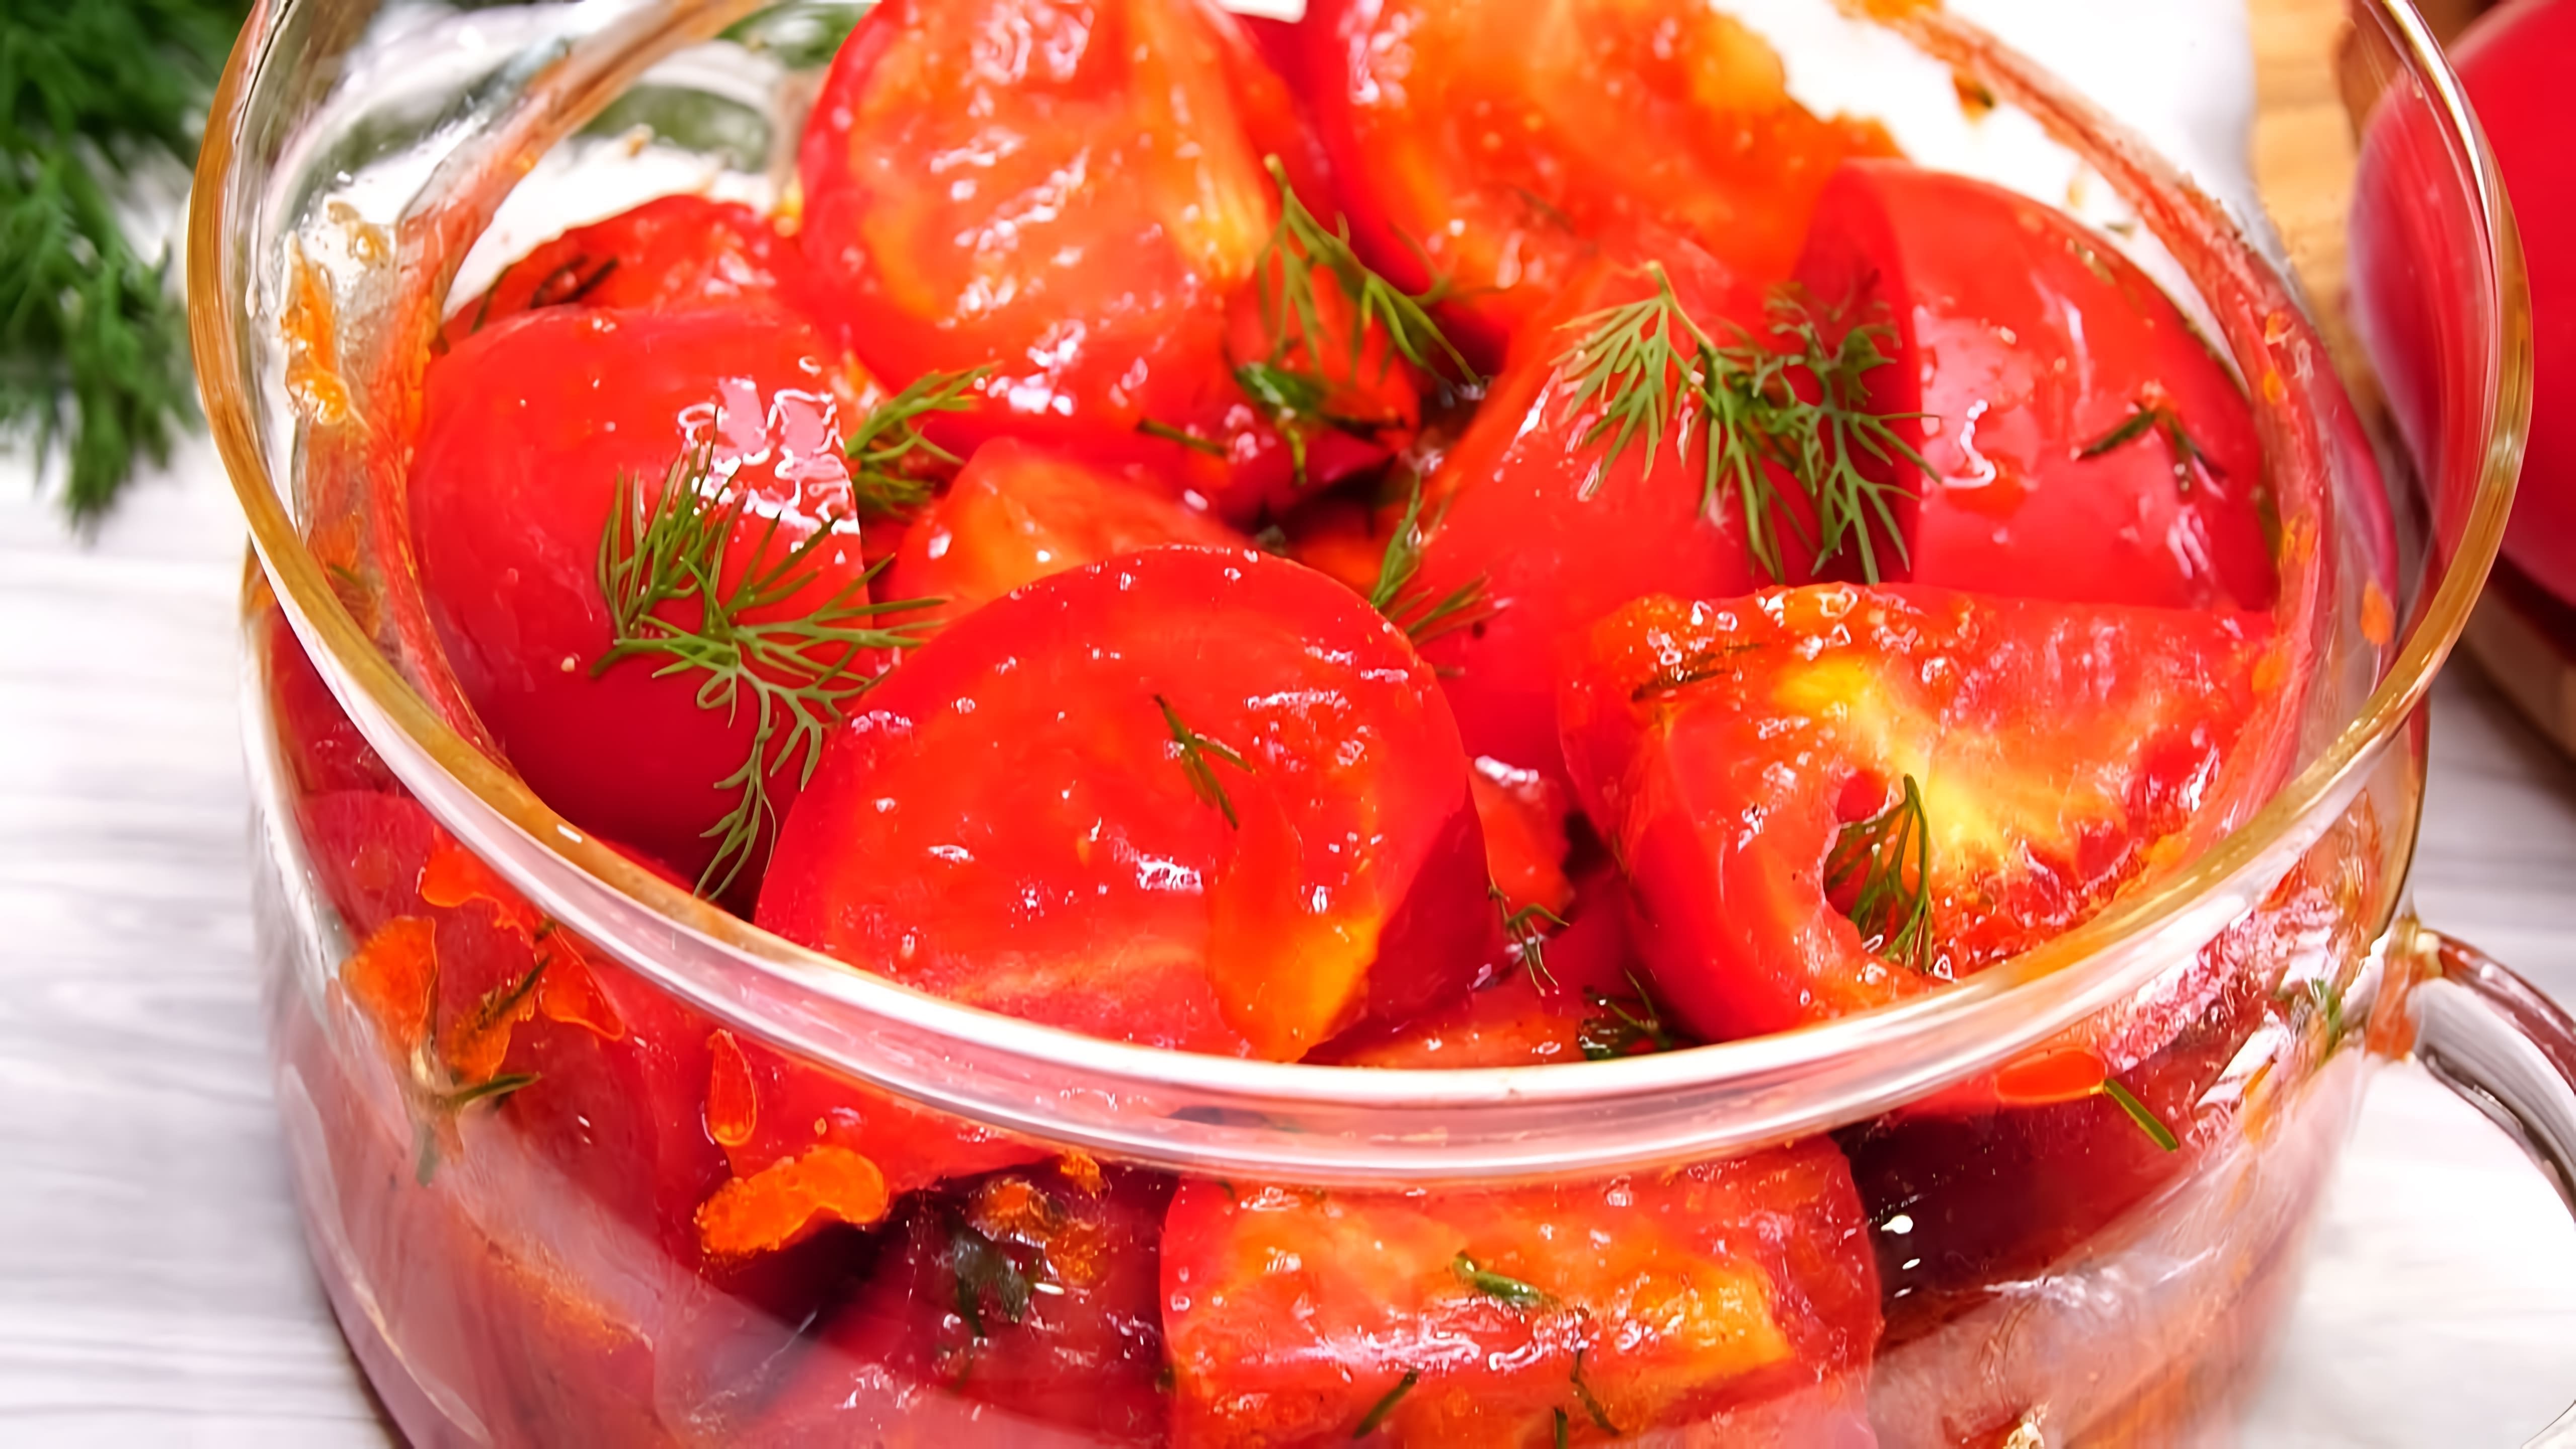 В этом видео демонстрируется рецепт приготовления закуски из свежих помидоров